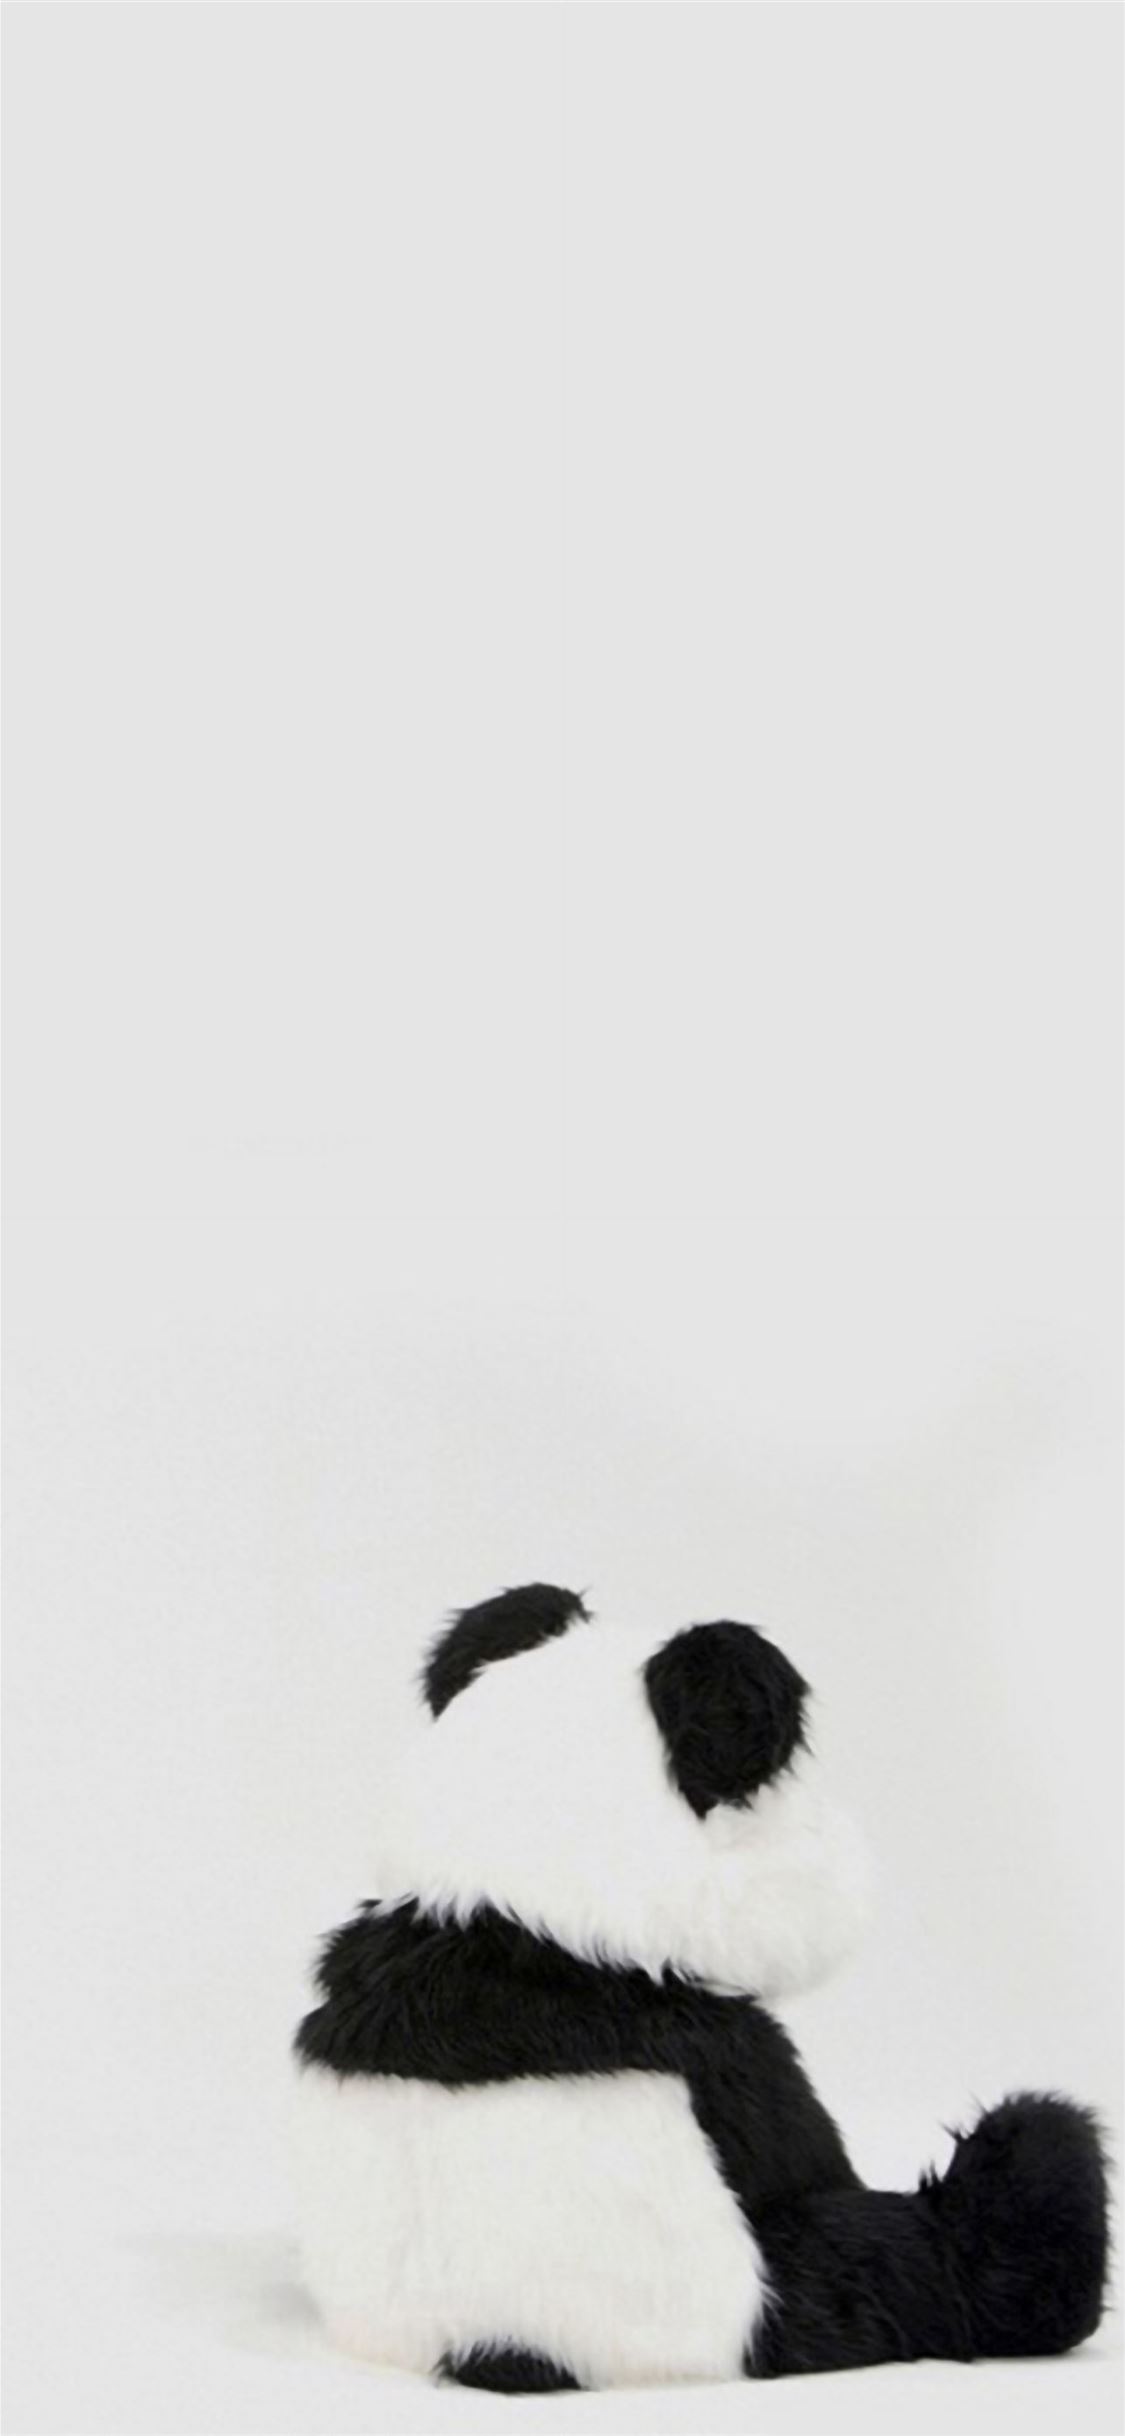 Minimal Simple Panda Back iPhone wallpaper 